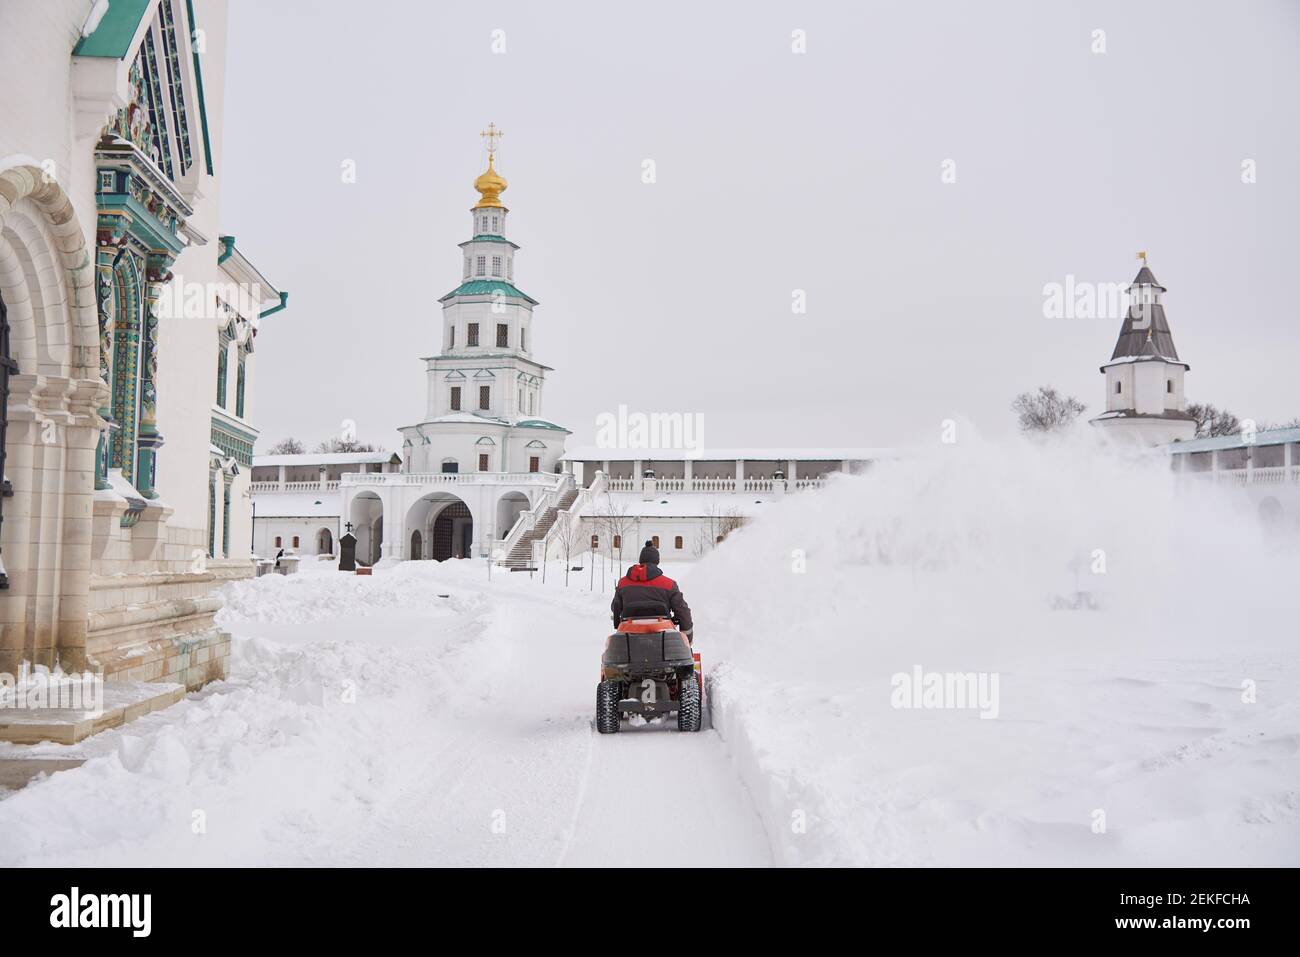 Russland, Region Moskau, Februar 2021.EIN warm gekleideter Mann auf einem Schneepflug entfernt an einem frostigen Tag Schnee auf dem Gebiet des Klosters. Stockfoto